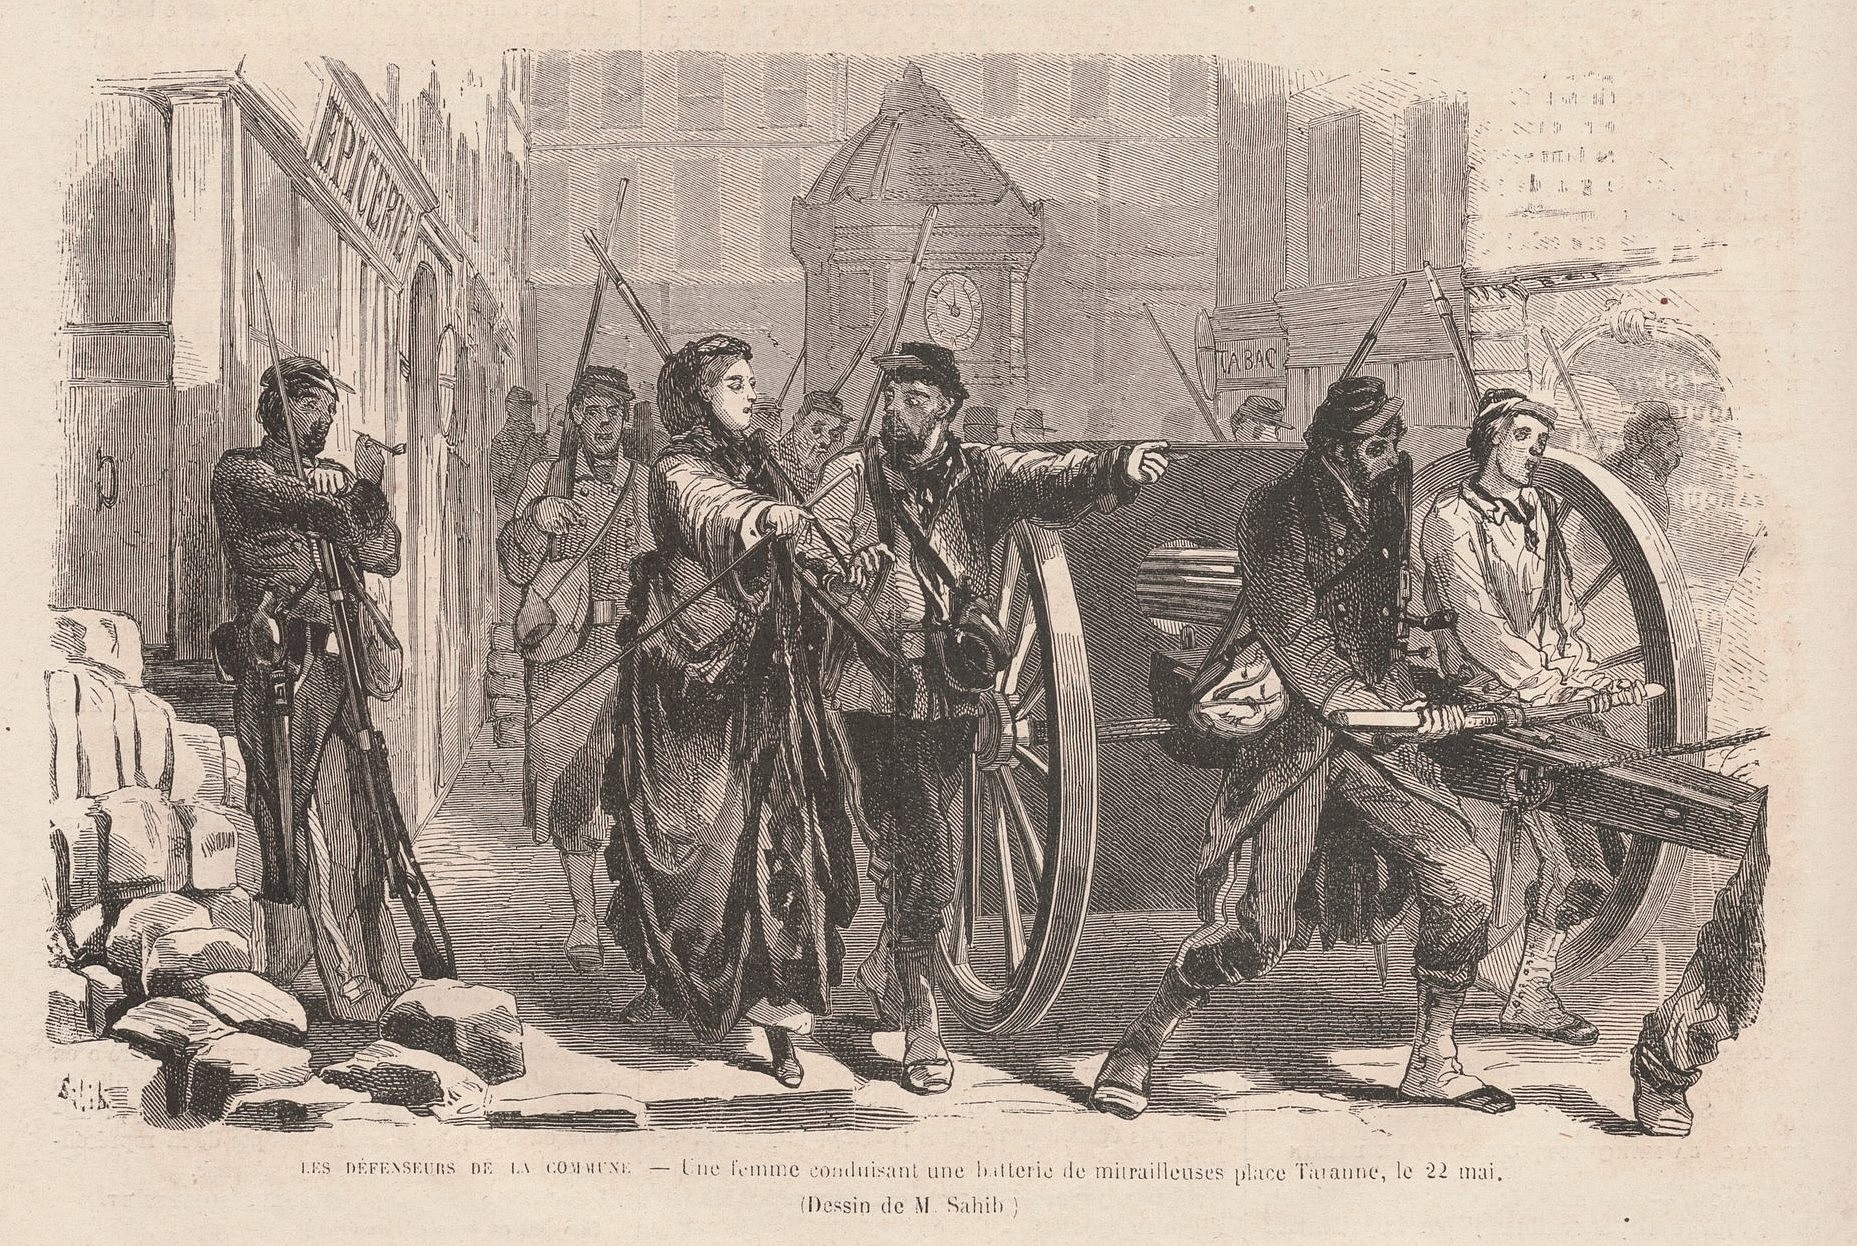 22 mai 1871 - Femme conduisant une mitrailleuse place Turenne - Dessin de Sahib (Le Monde Illustré)